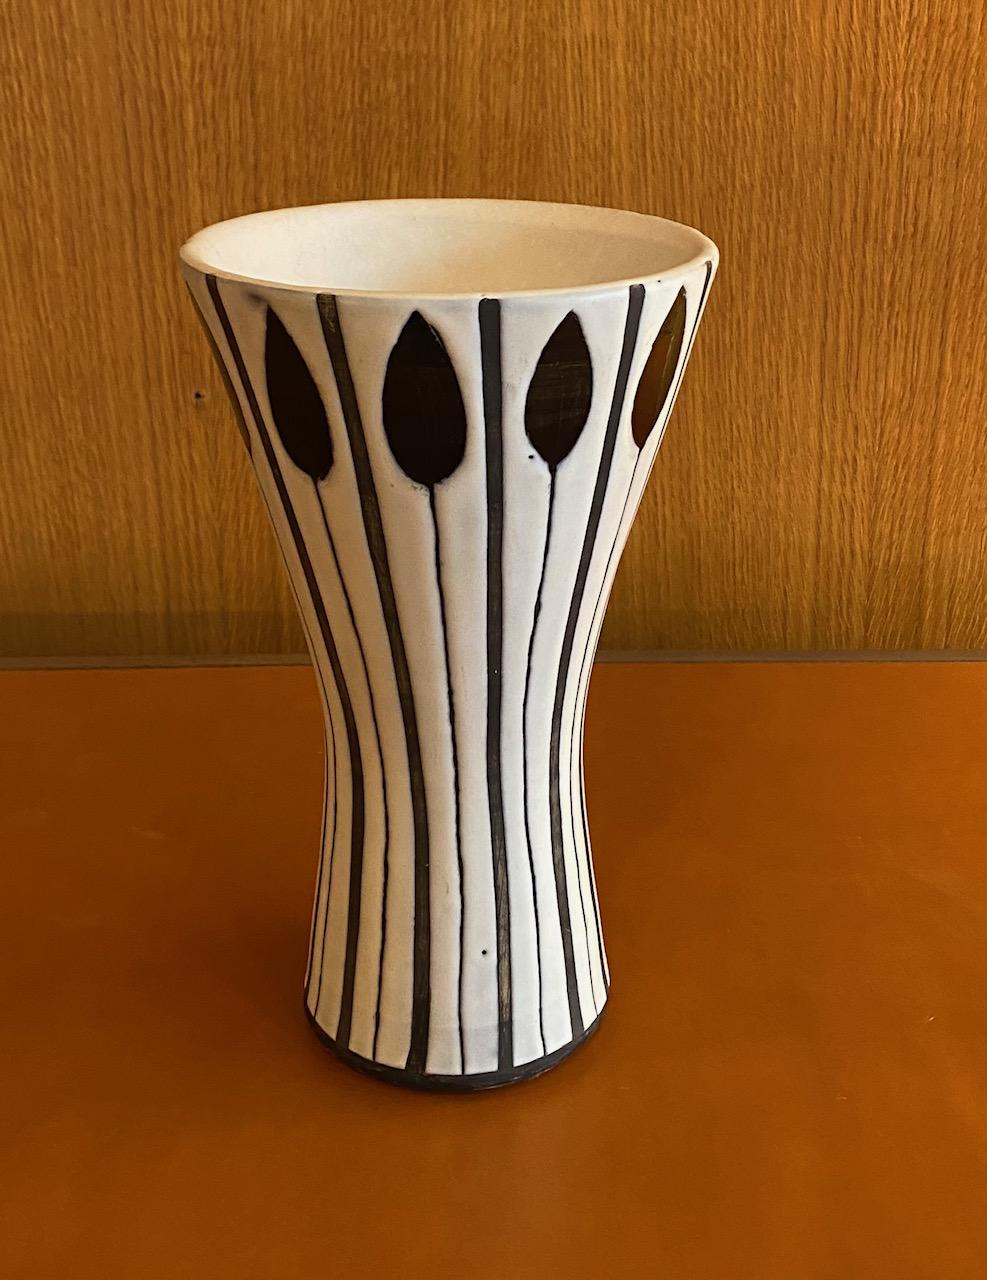 Keramikvase von Roger Capron, Frankreich, 1960er Jahre
Signiert 